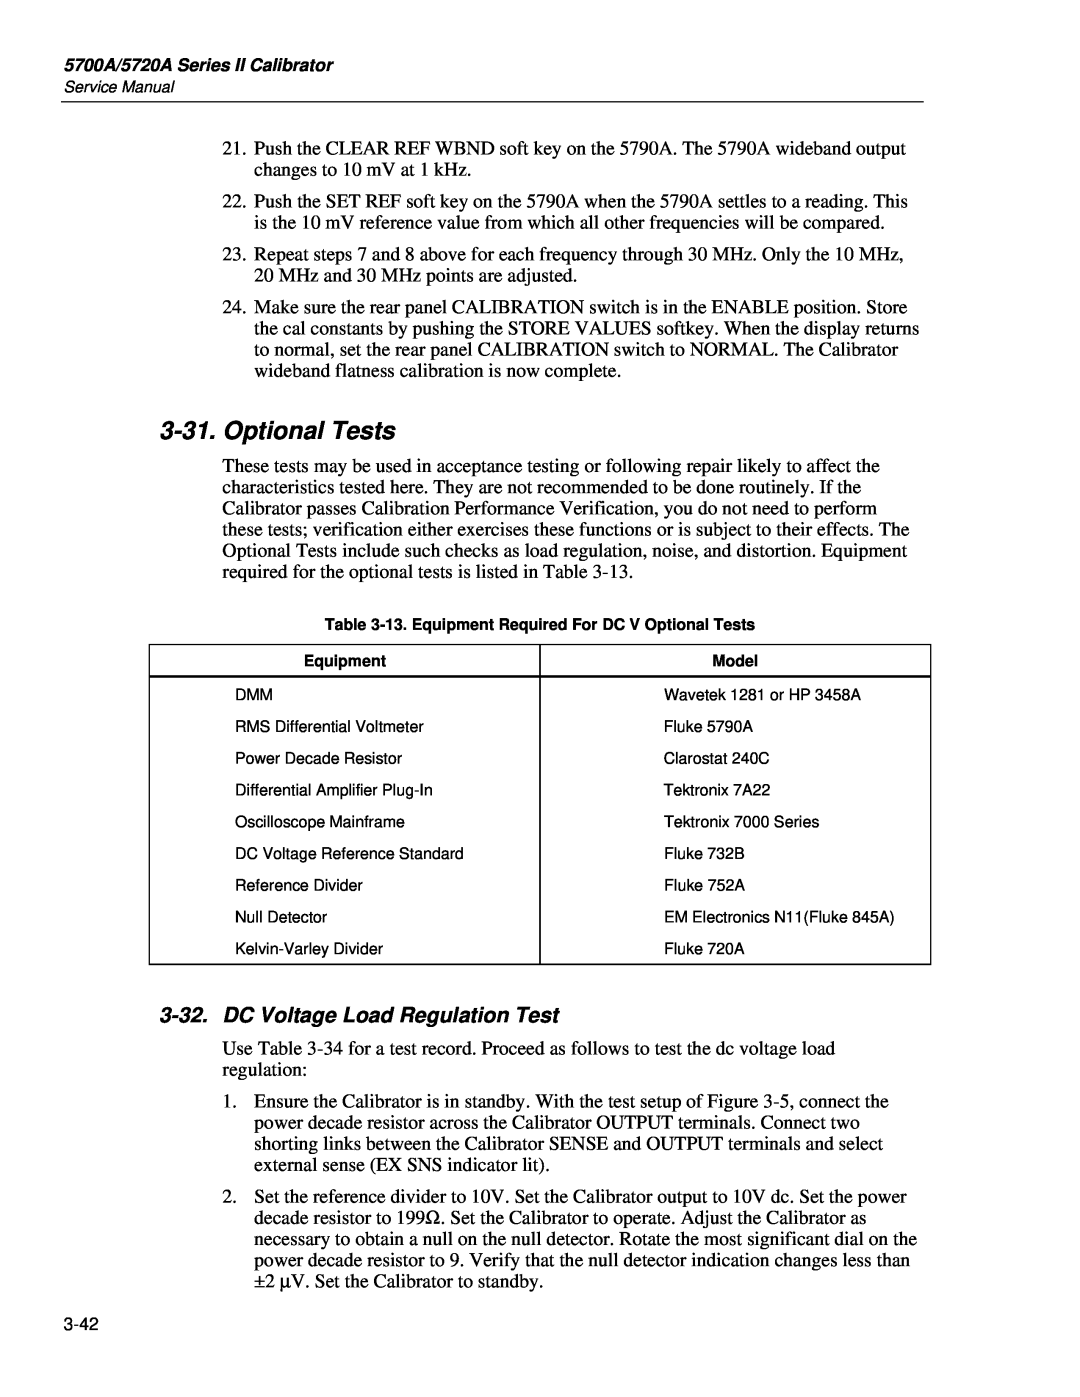 Fluke 5720A service manual Optional Tests, DC Voltage Load Regulation Test 